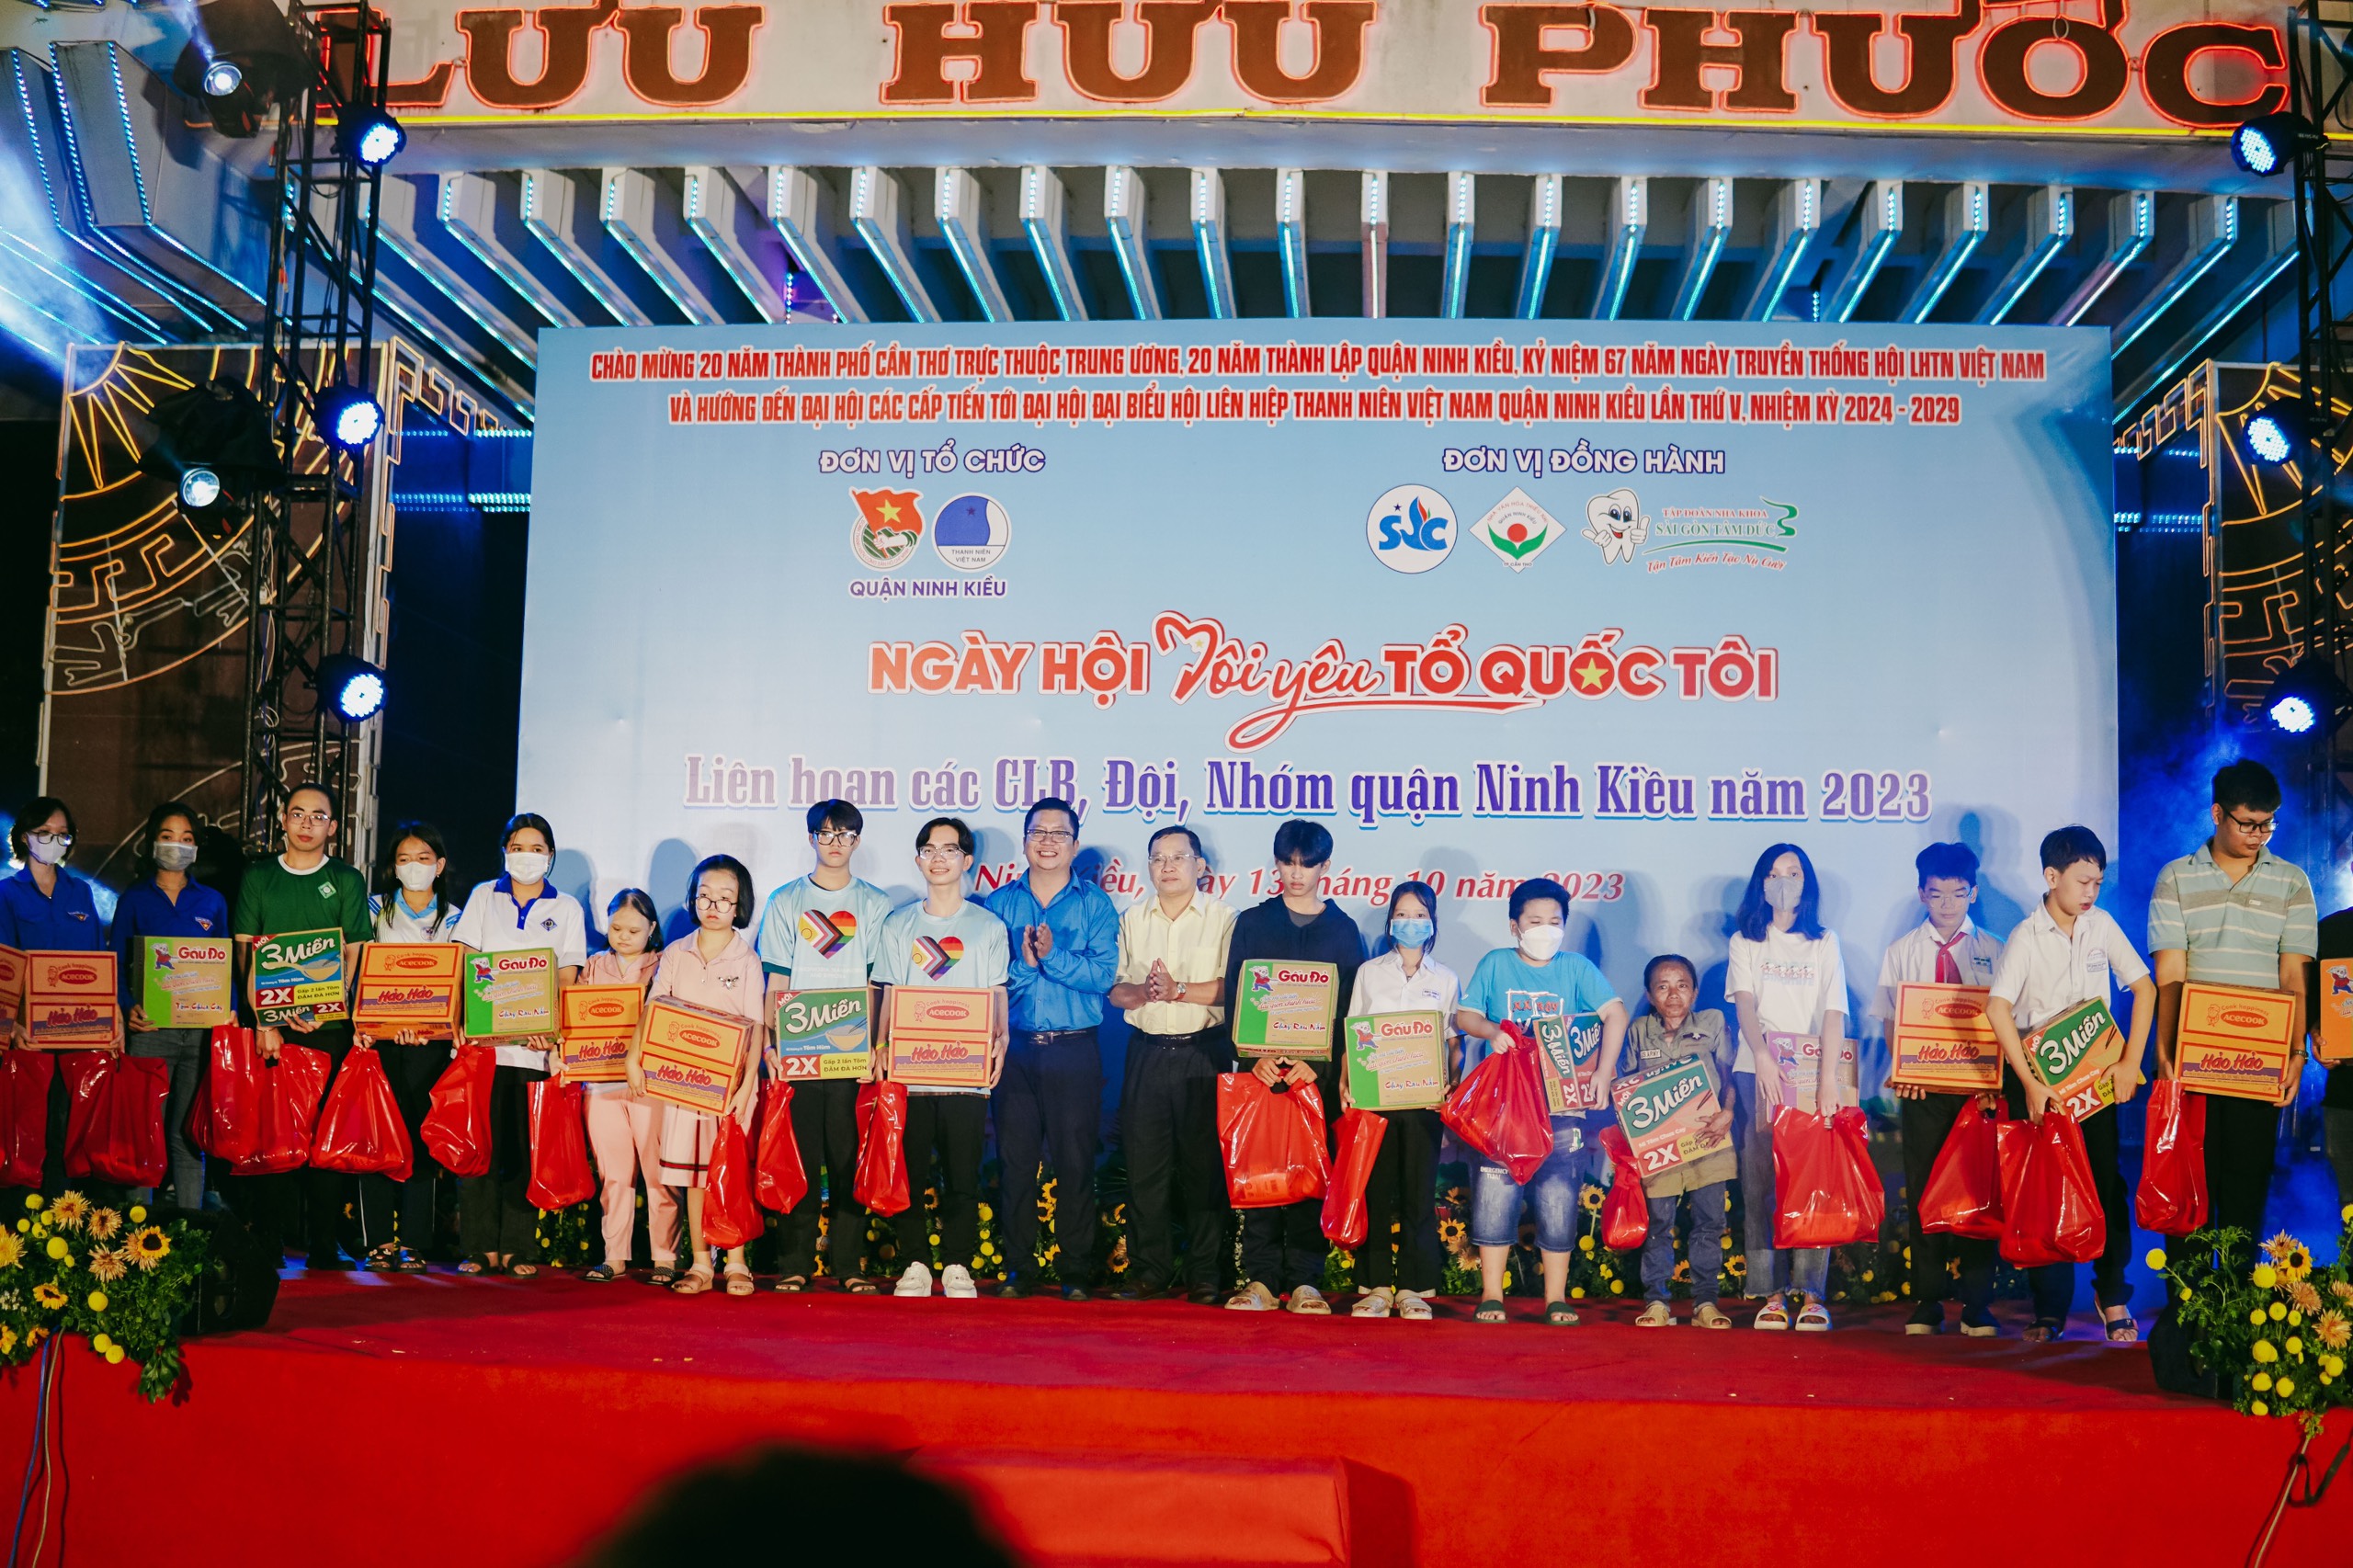 LH03: Trao 21 xuất quà tặng cho thanh niên yếu thế trên địa bàn quận Ninh Kiều